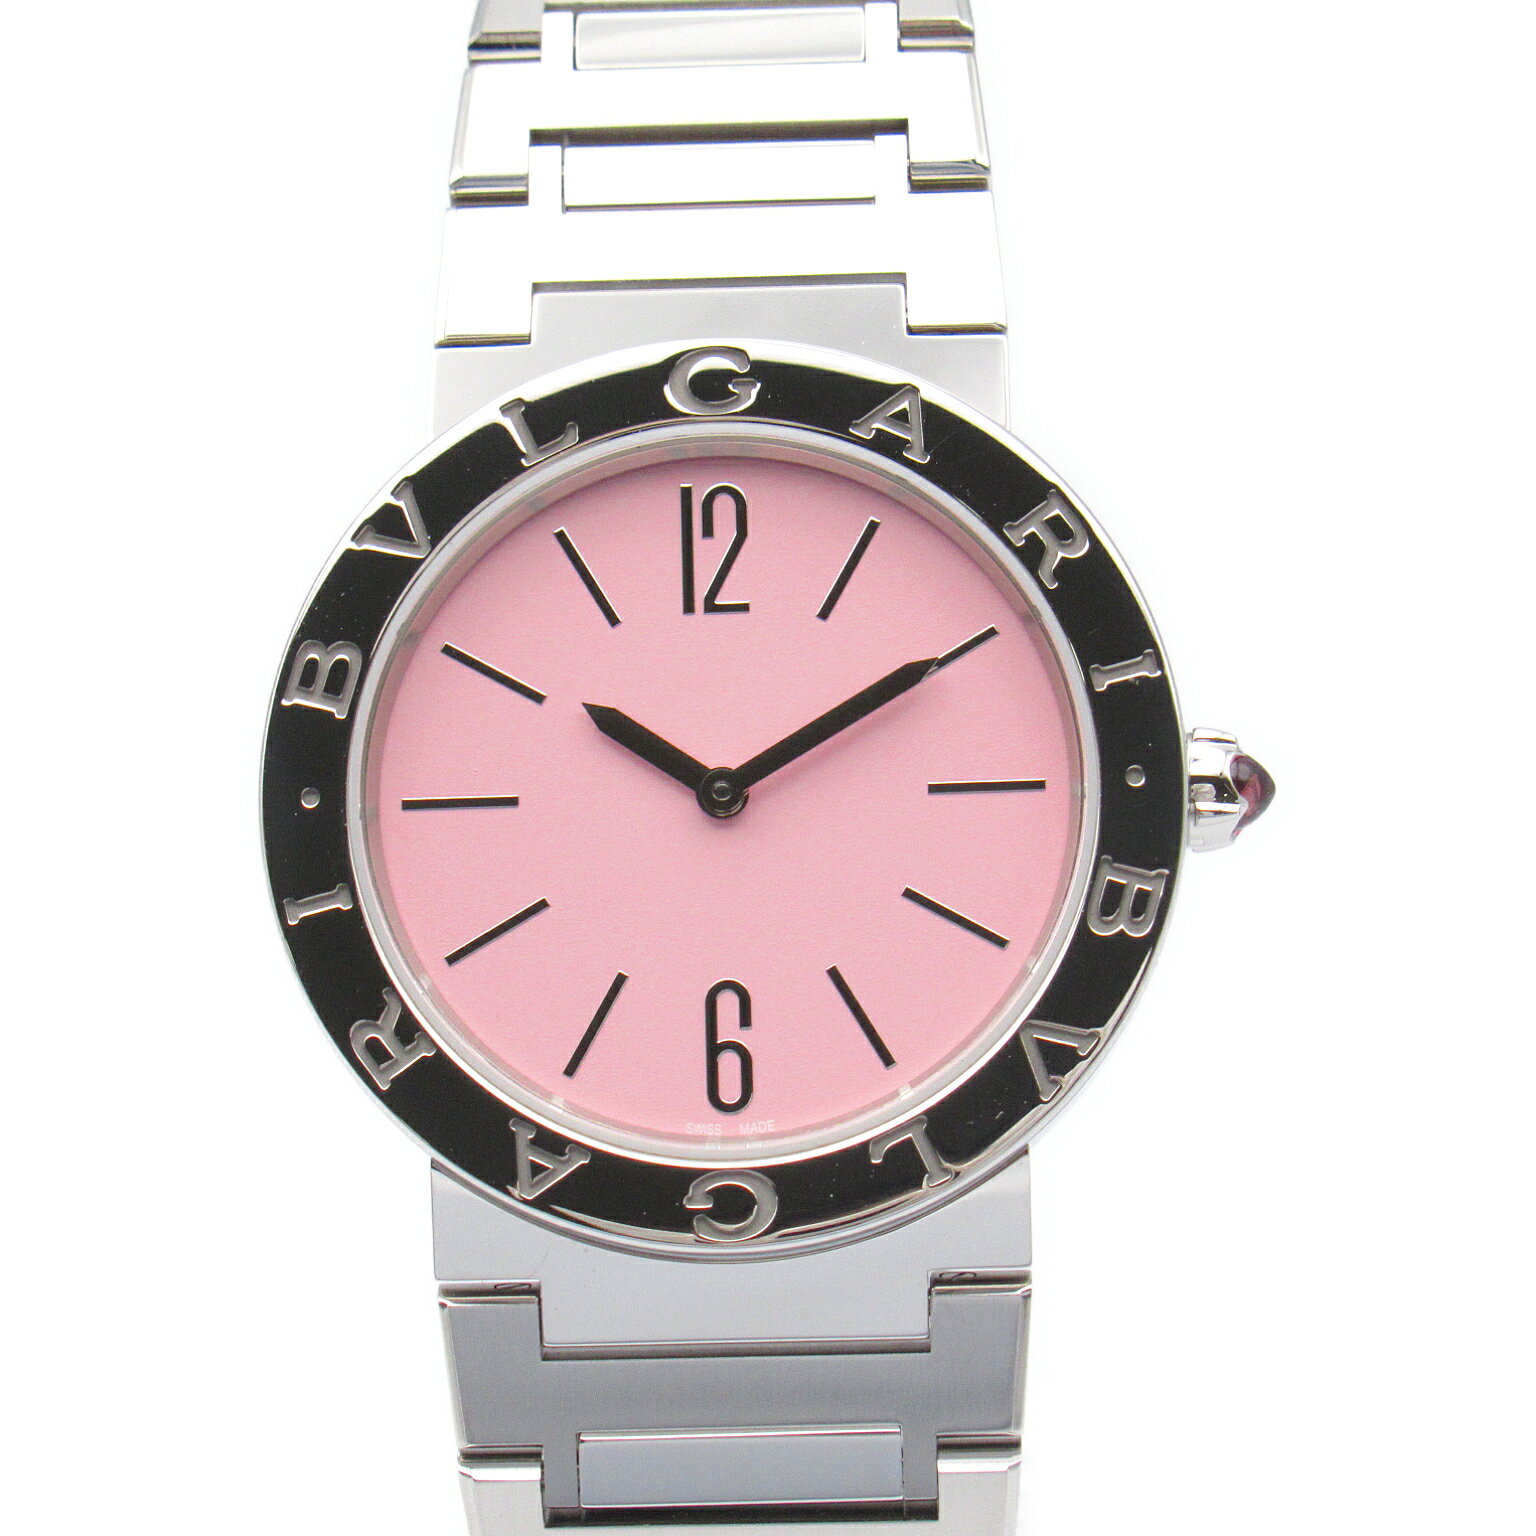 ブルガリ BVLGARI ブルガリ ブルガリ 腕時計 時計 ステンレススチール レディース ピンク系 103711 【中古】